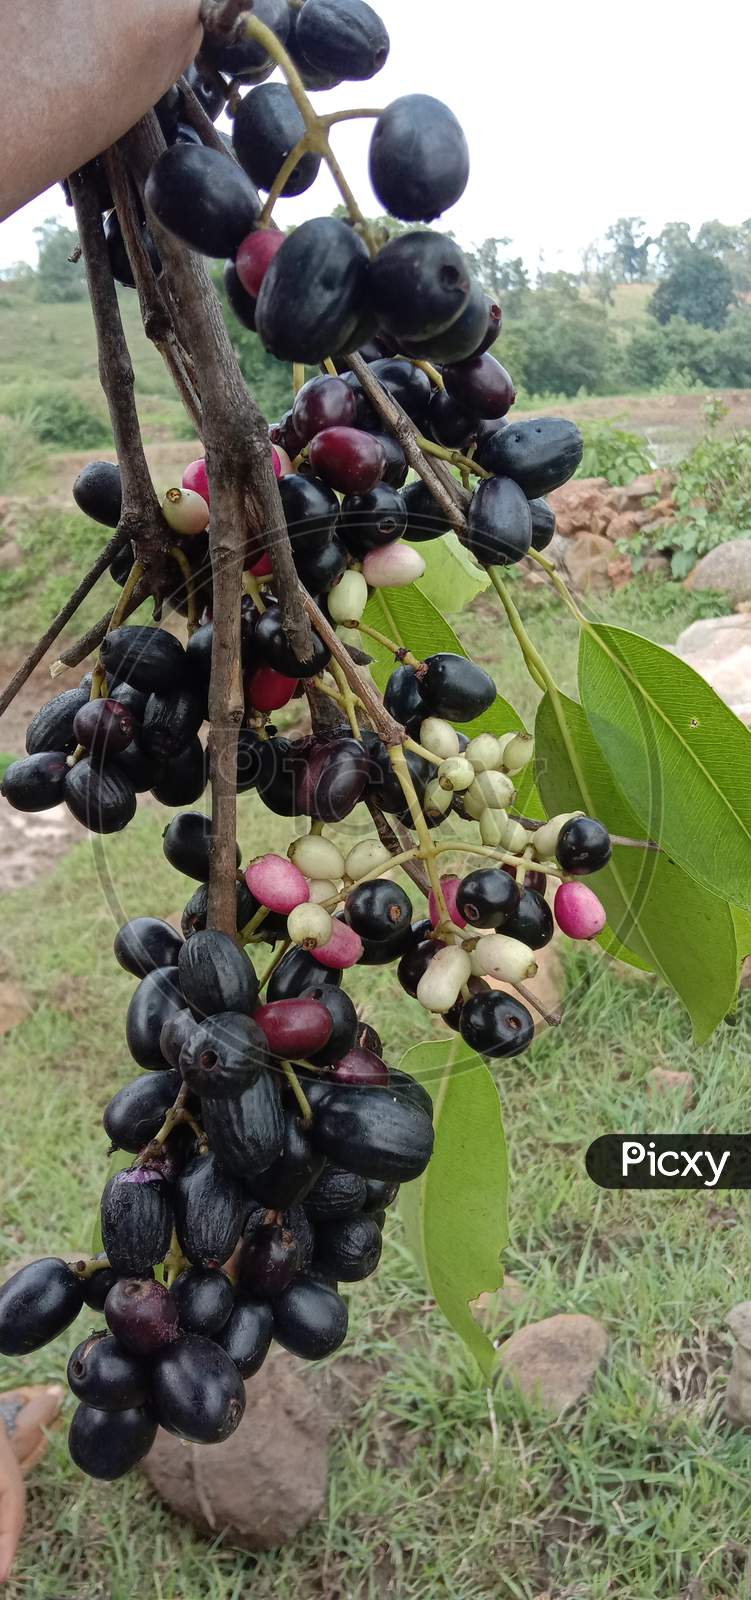 Fruit of blackberry